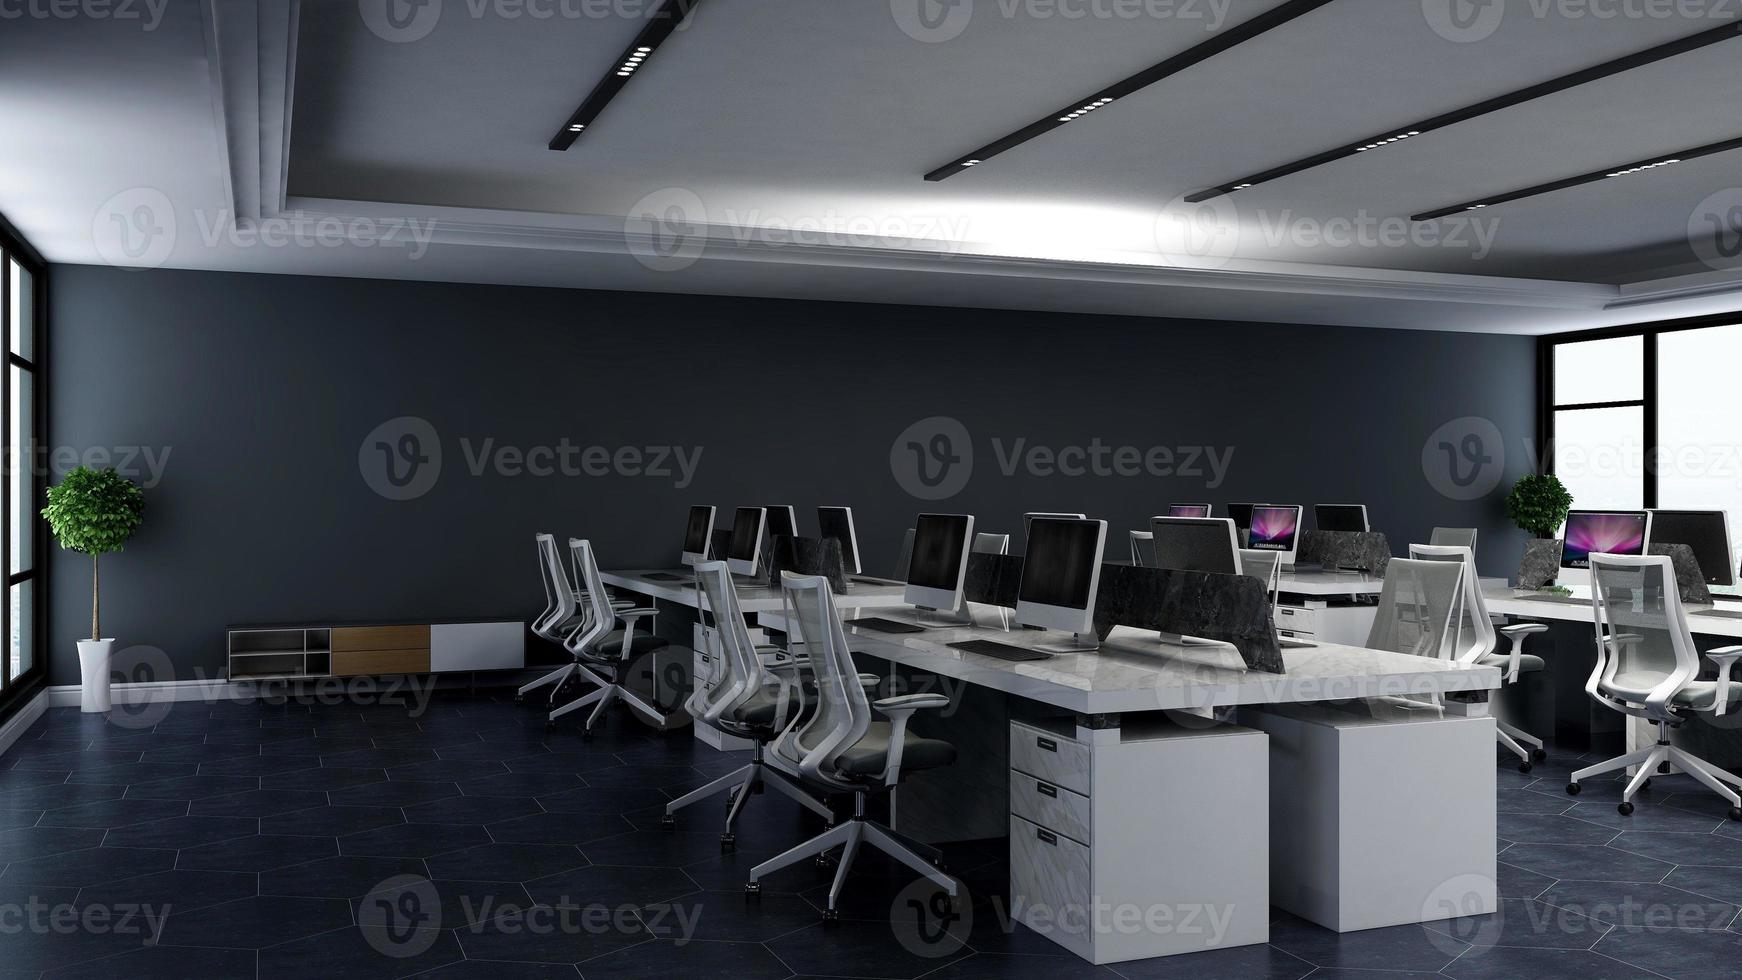 modernes büroarbeitsplatz-innendesign in 3d-rendering foto